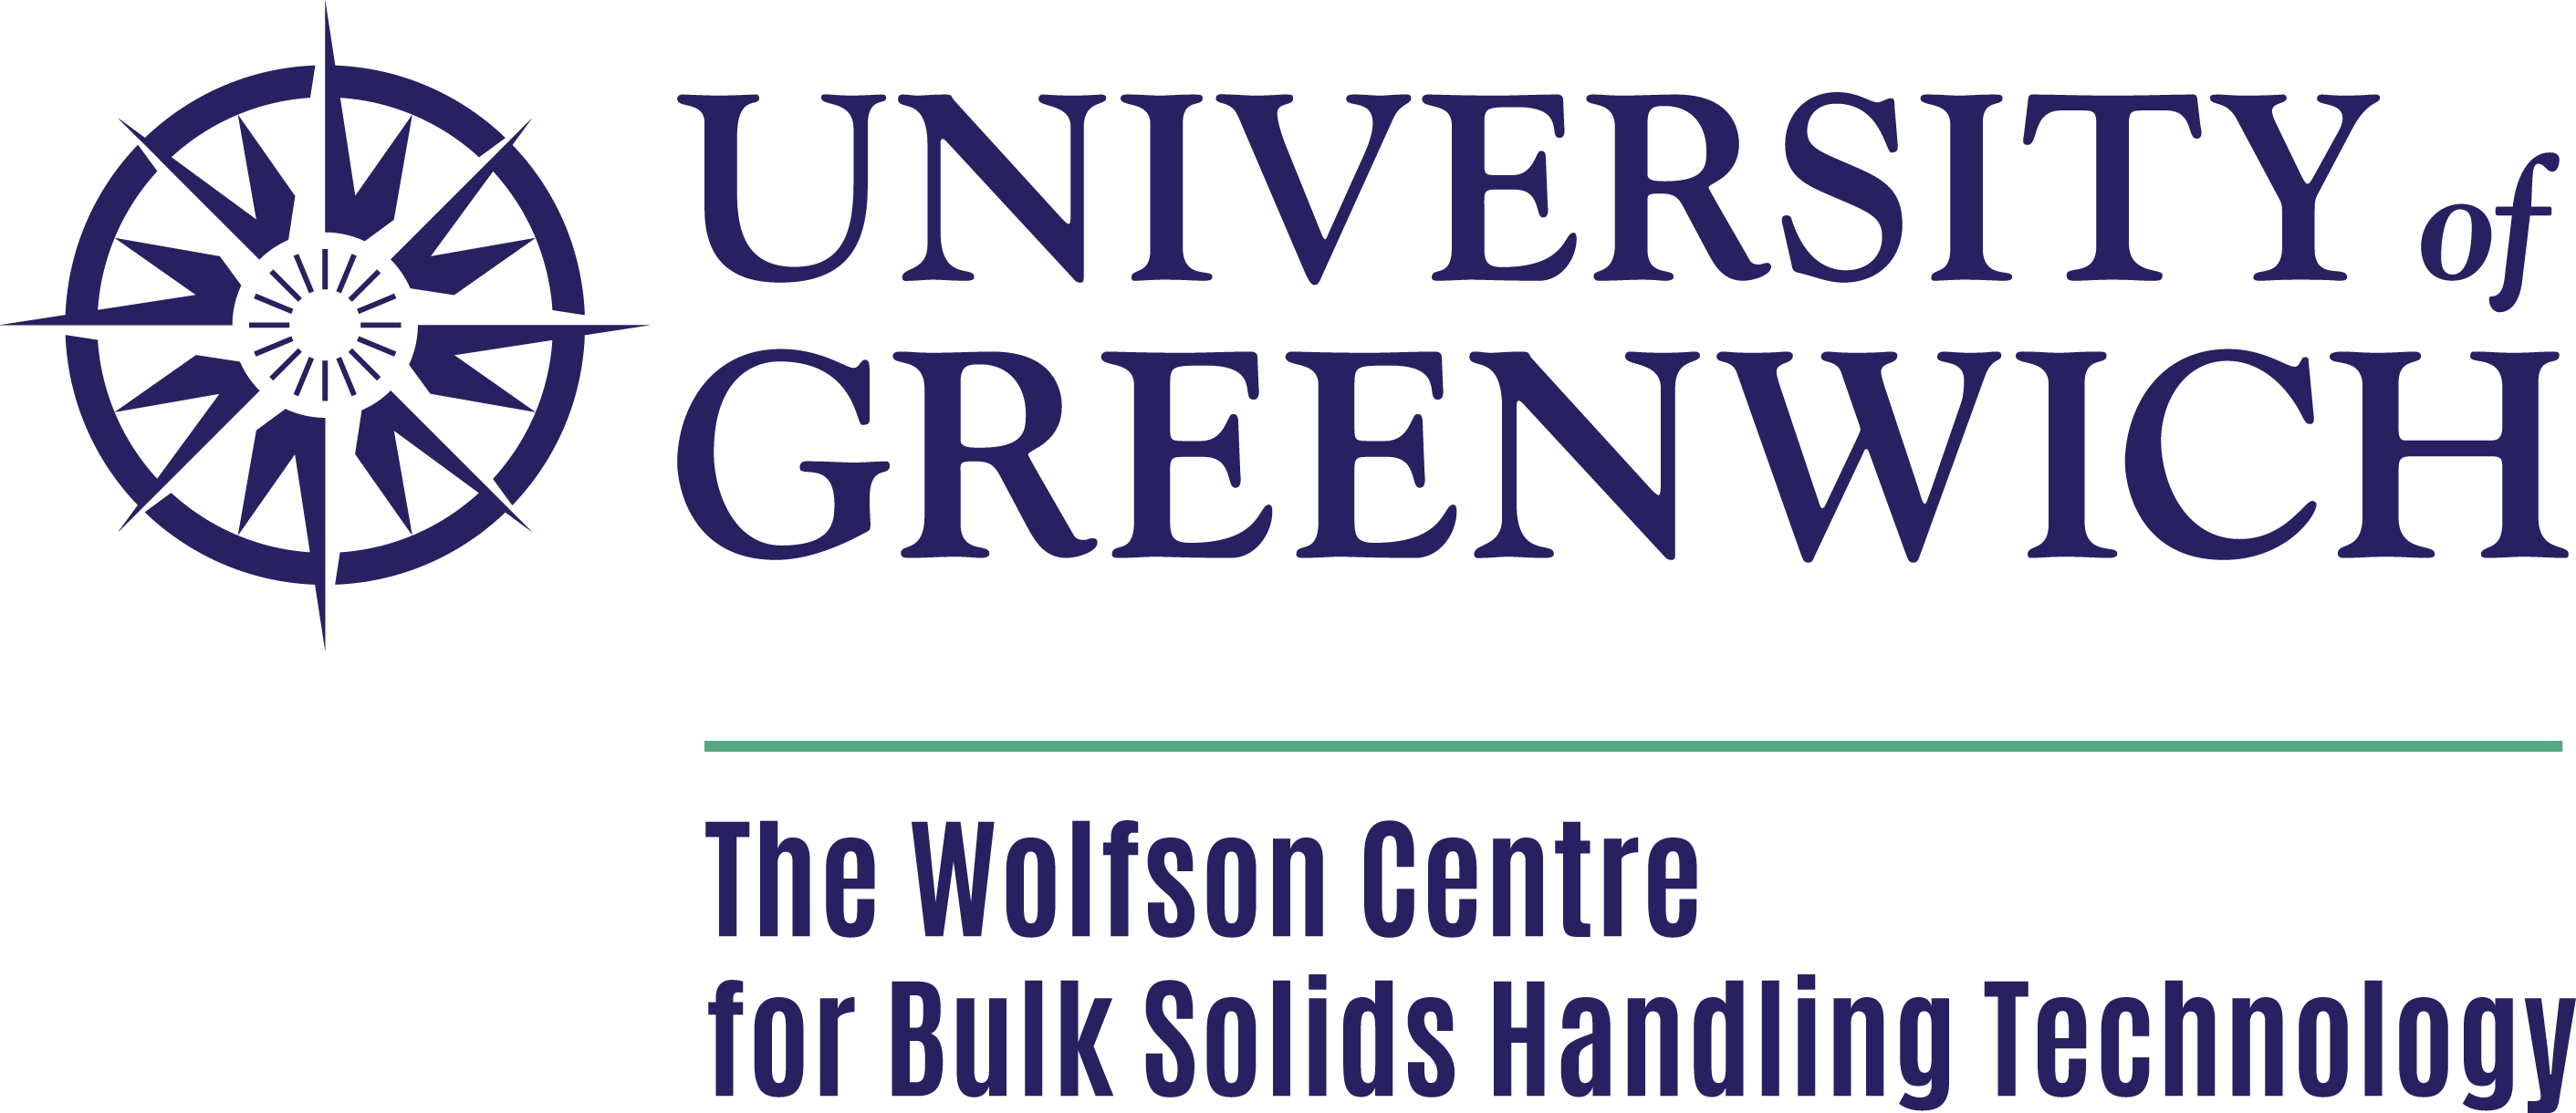 格林威治大学沃尔夫森散装固体处理中心标志。